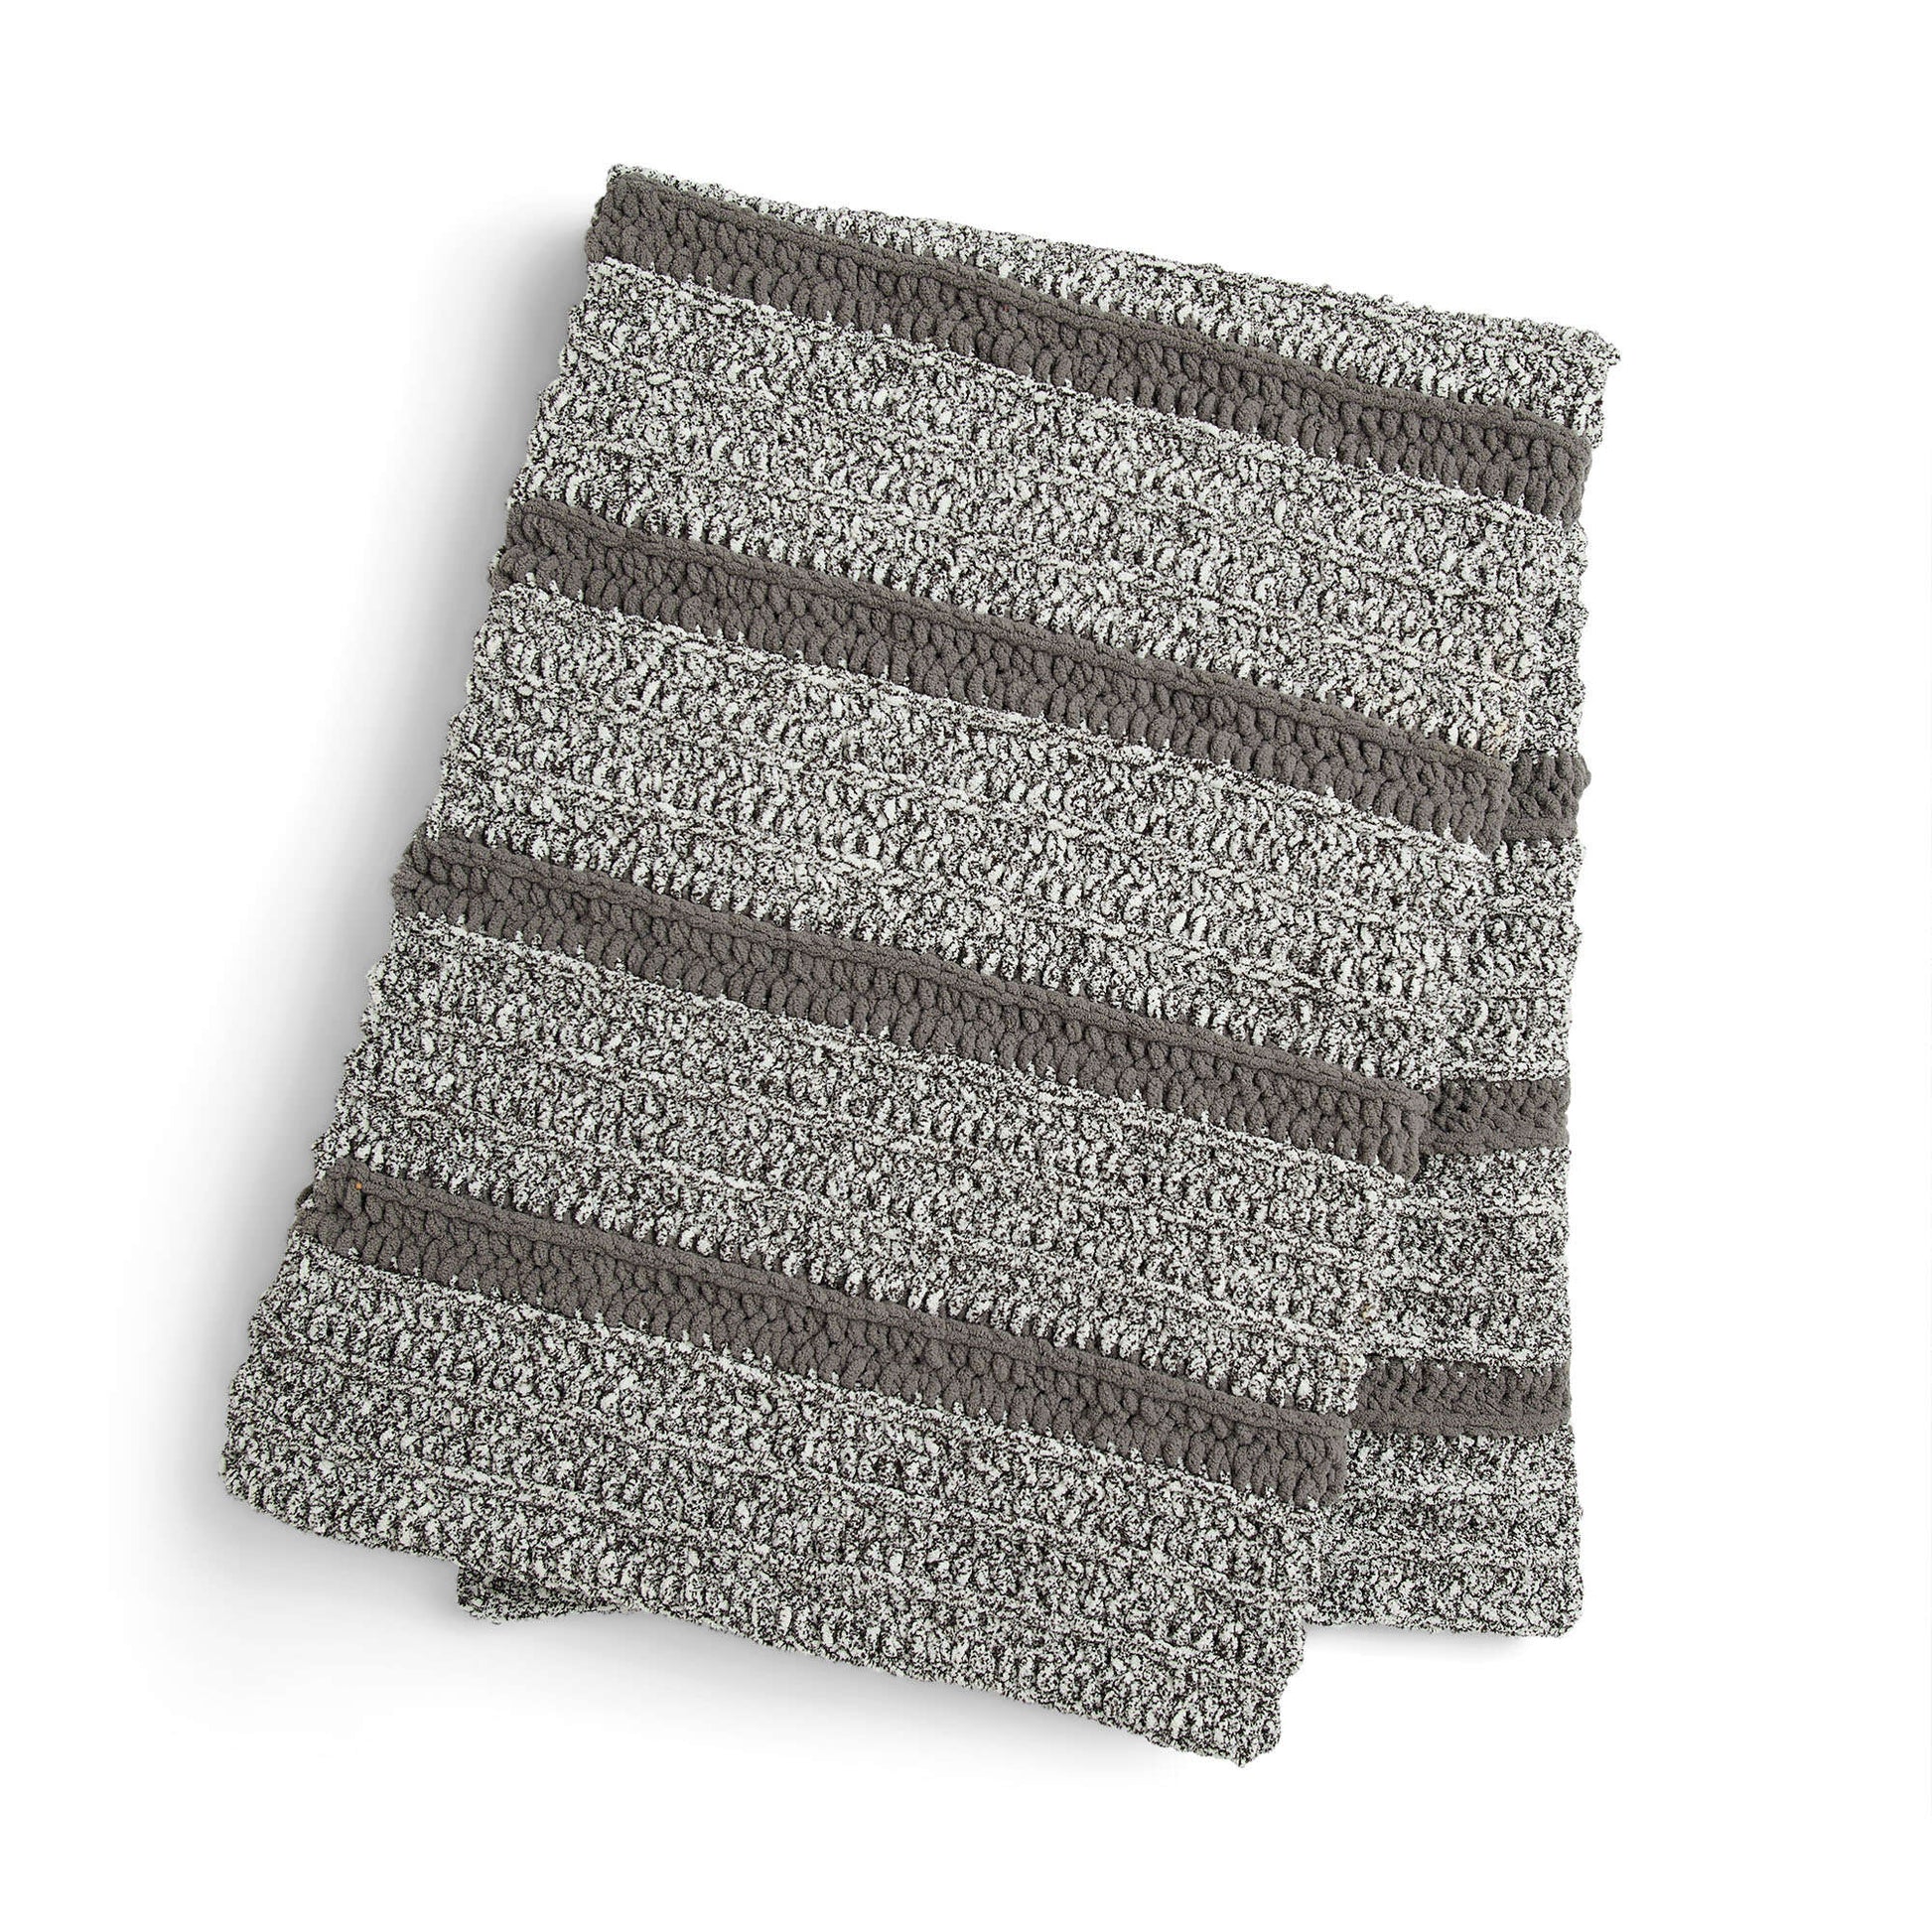 Free Bernat Speckle Stripes Crochet Blanket Pattern